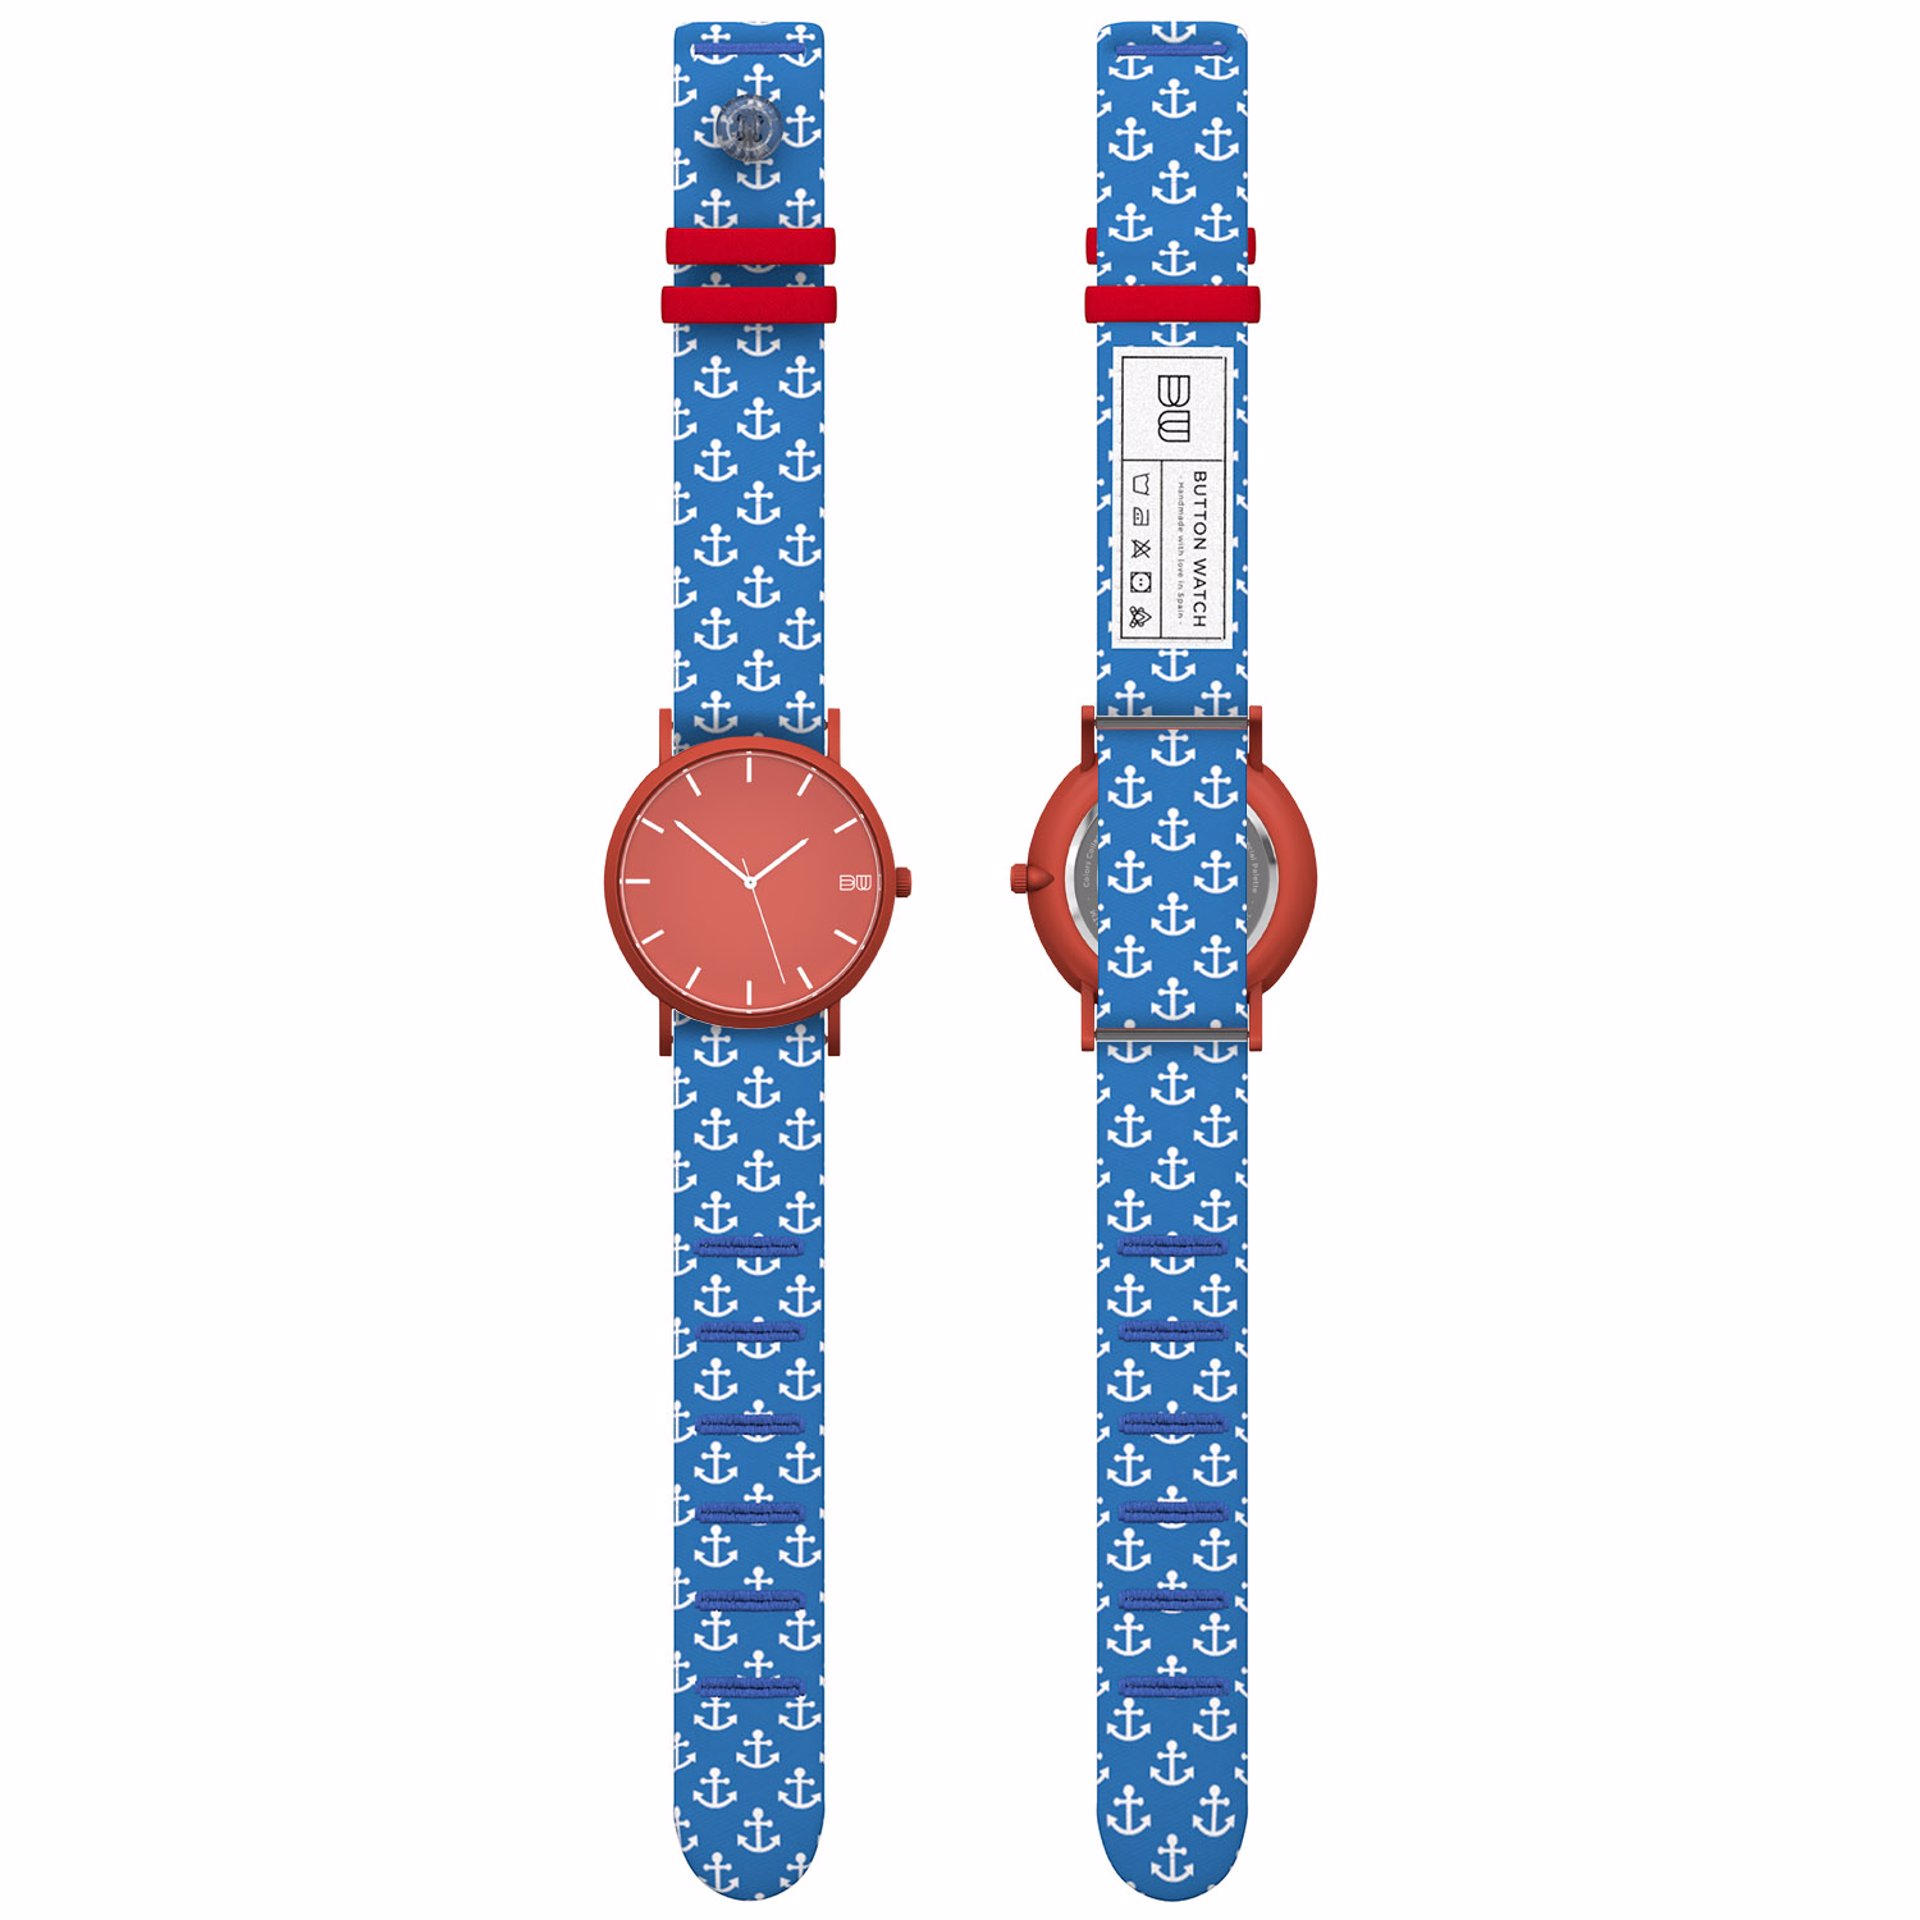 Button Watch: relojes de pulsera de tela de camisa y ojal. colaboración con El Ganso